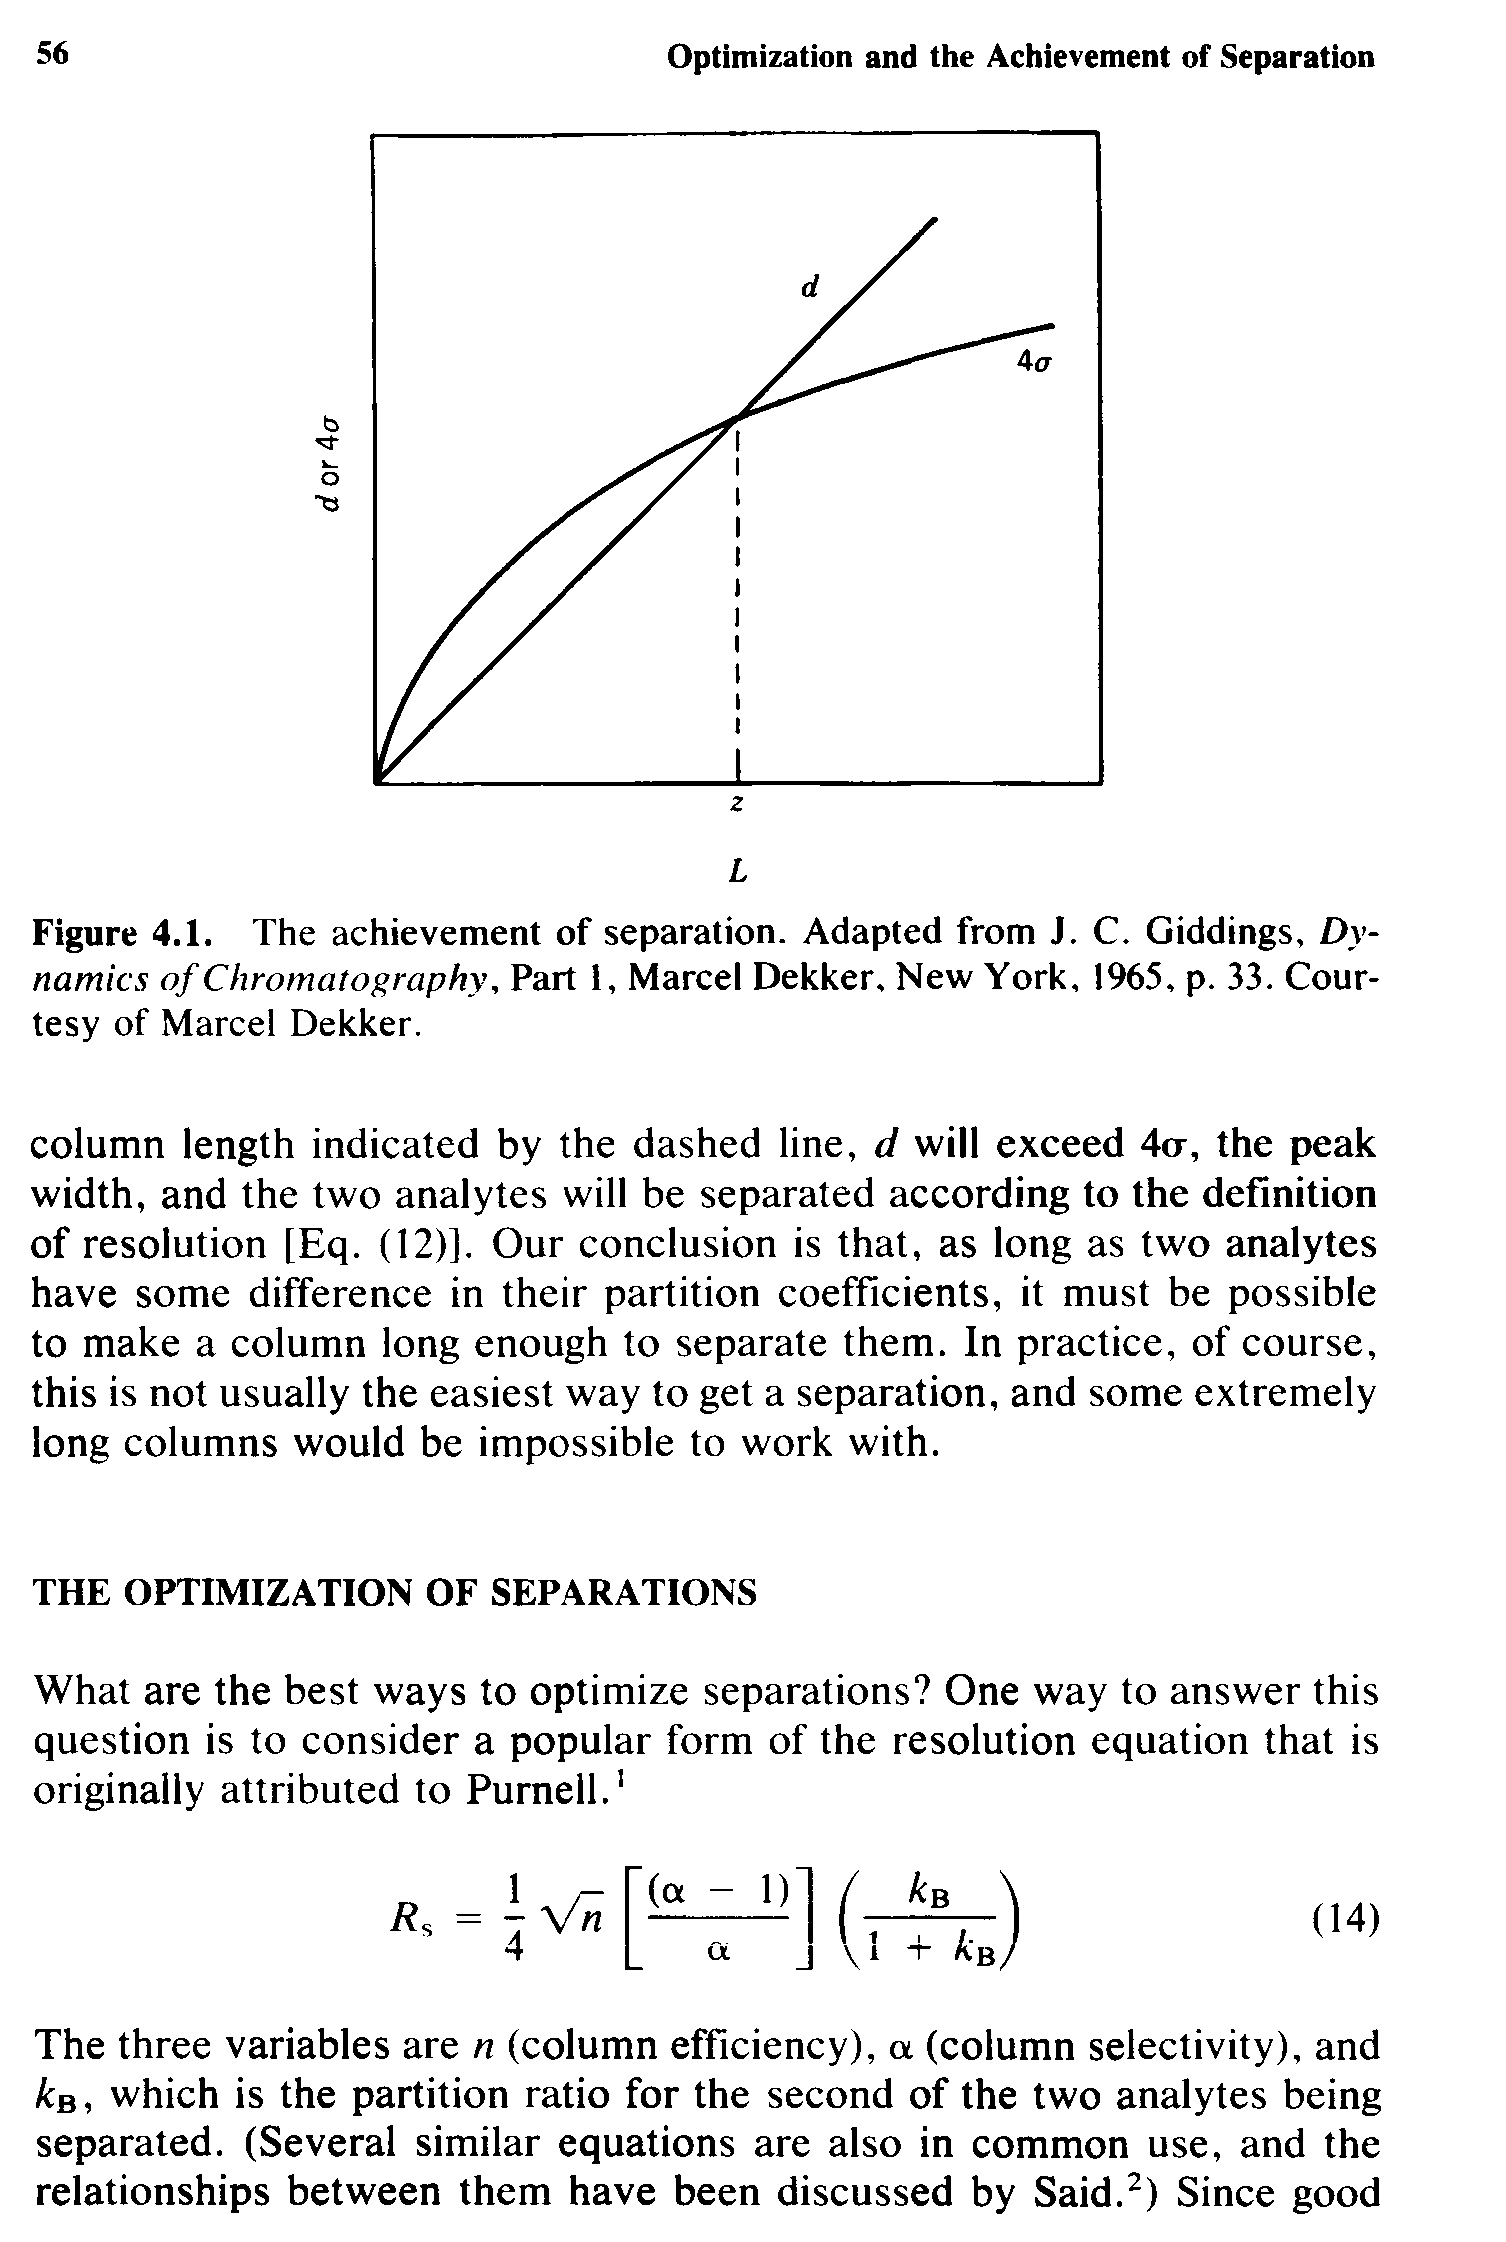 Figure 4.1. The achievement of separation. Adapted from J. C. Giddings, Dynamics of Chromatography, Part 1, Marcel Dekker, New York, 1965, p. 33. Courtesy of Marcel Dekker.